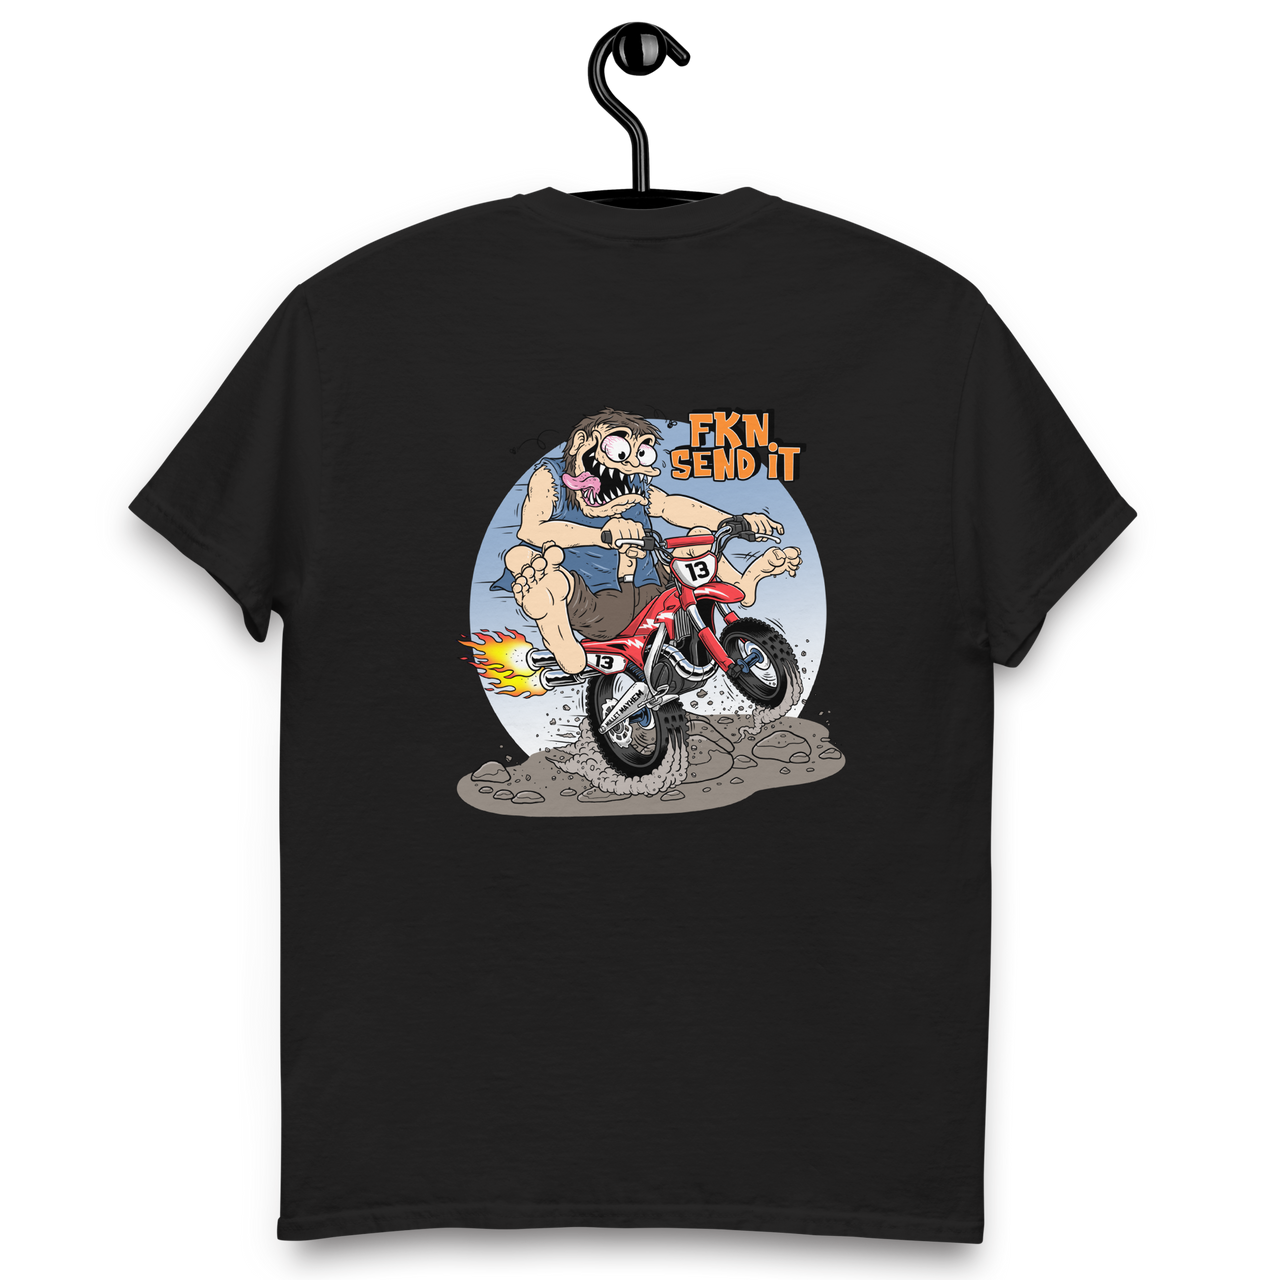 FKN SEND IT - Dirt Bike (t-shirt)